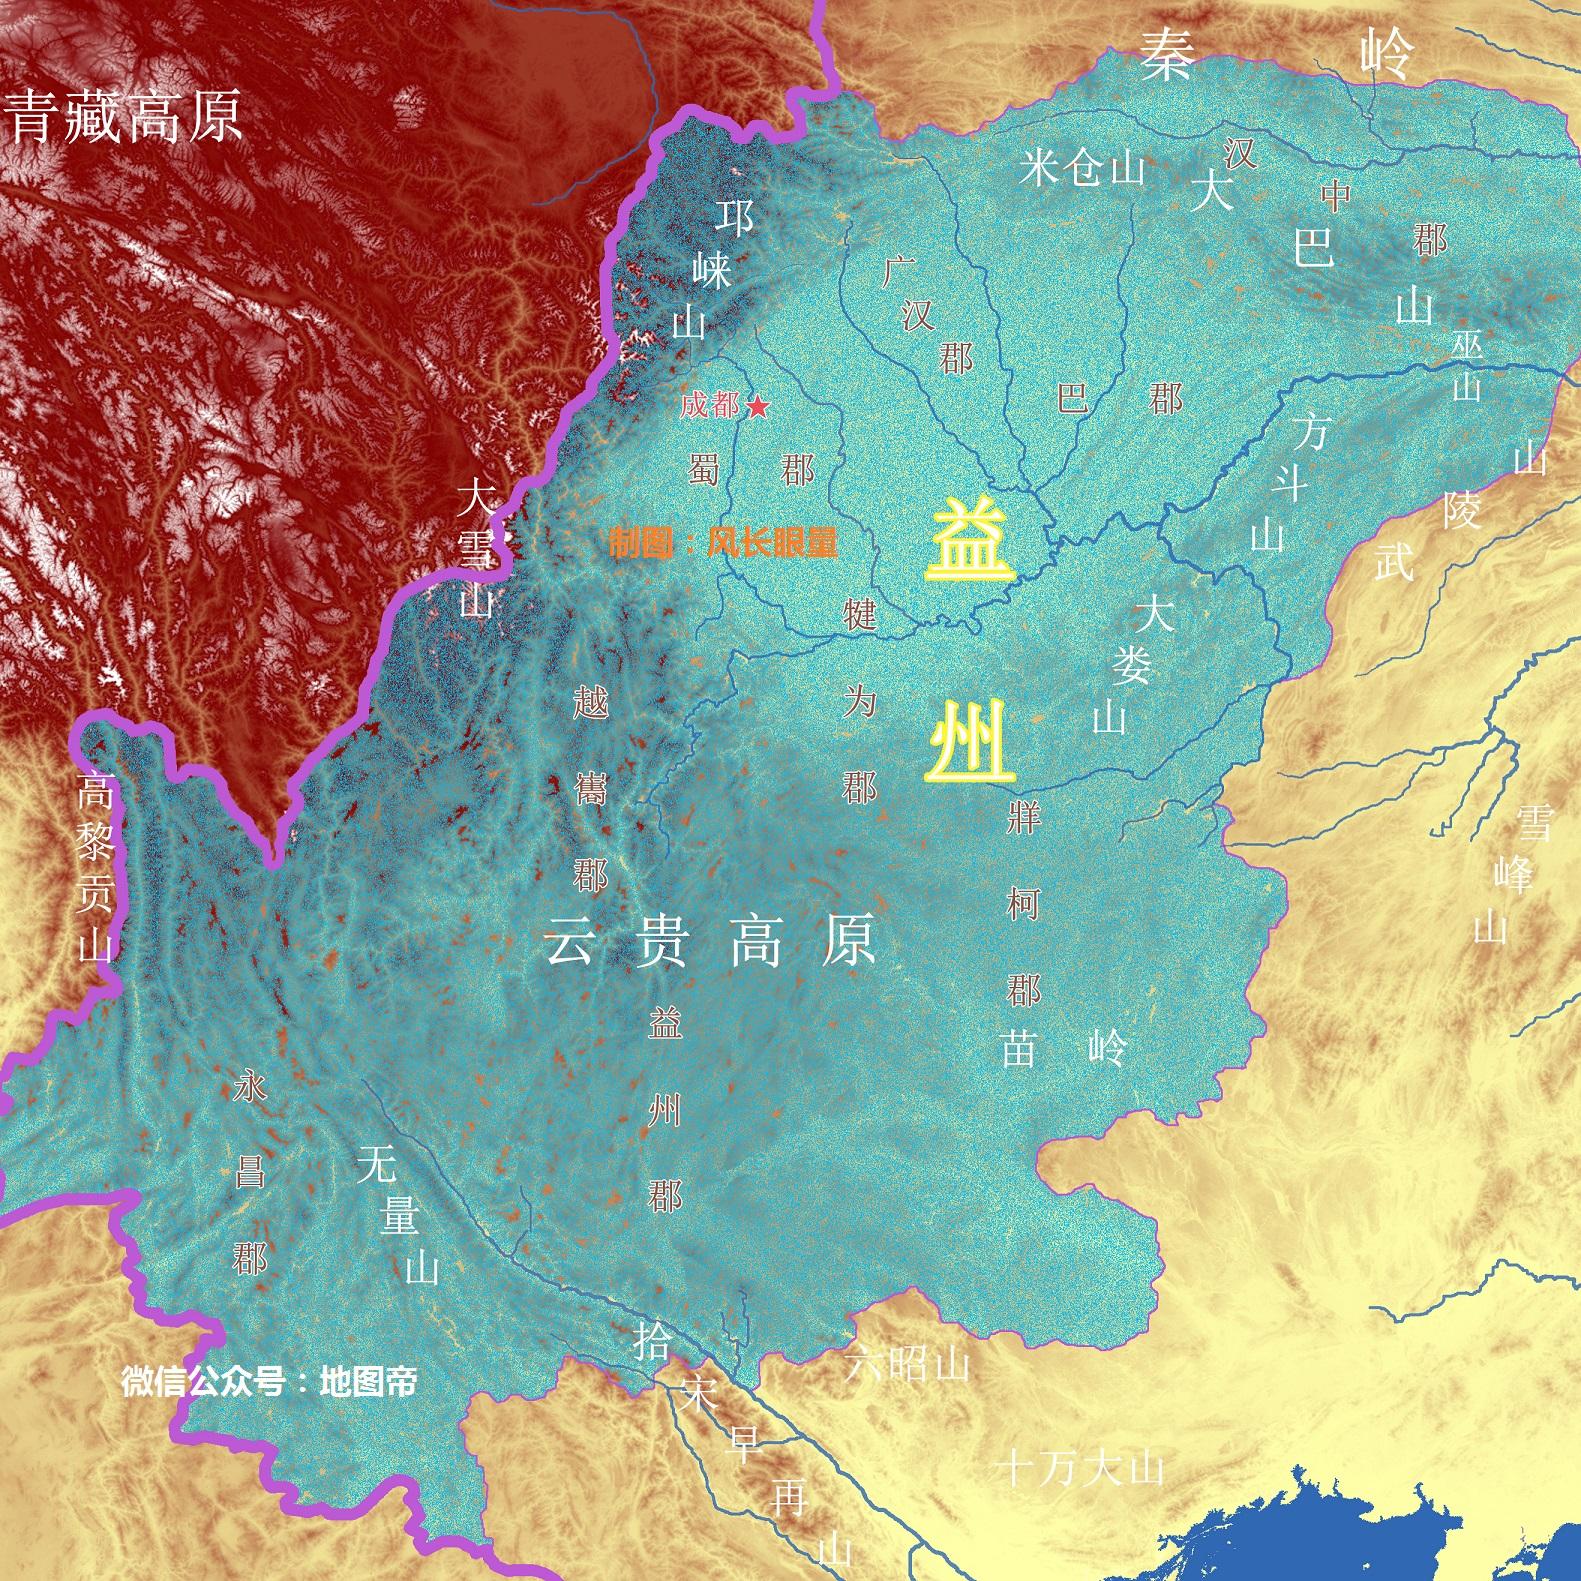 益州在哪儿刘备为何占据一个州就能三分天下